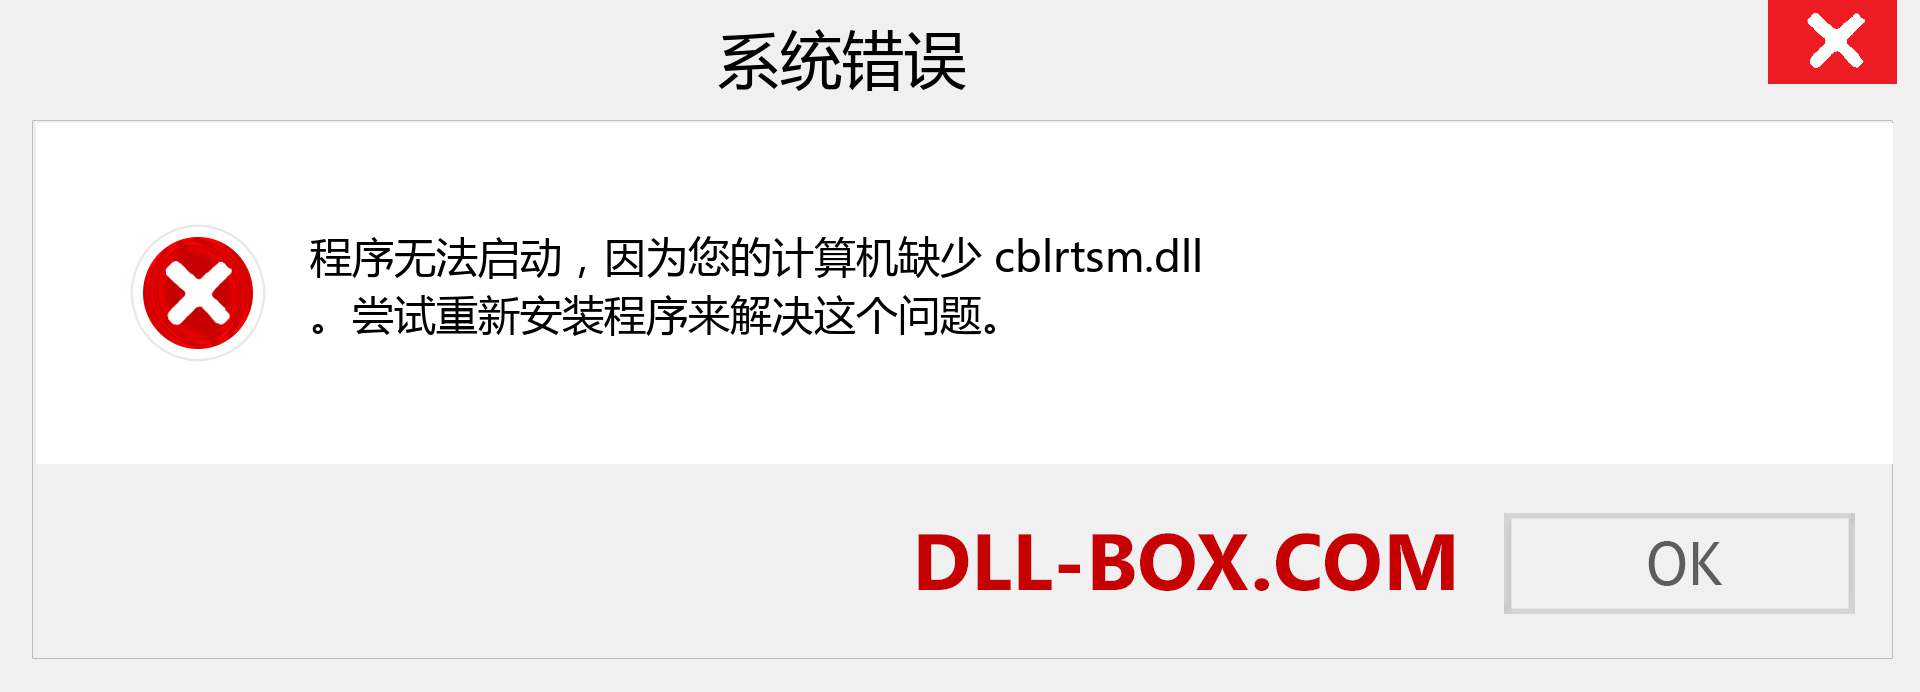 cblrtsm.dll 文件丢失？。 适用于 Windows 7、8、10 的下载 - 修复 Windows、照片、图像上的 cblrtsm dll 丢失错误